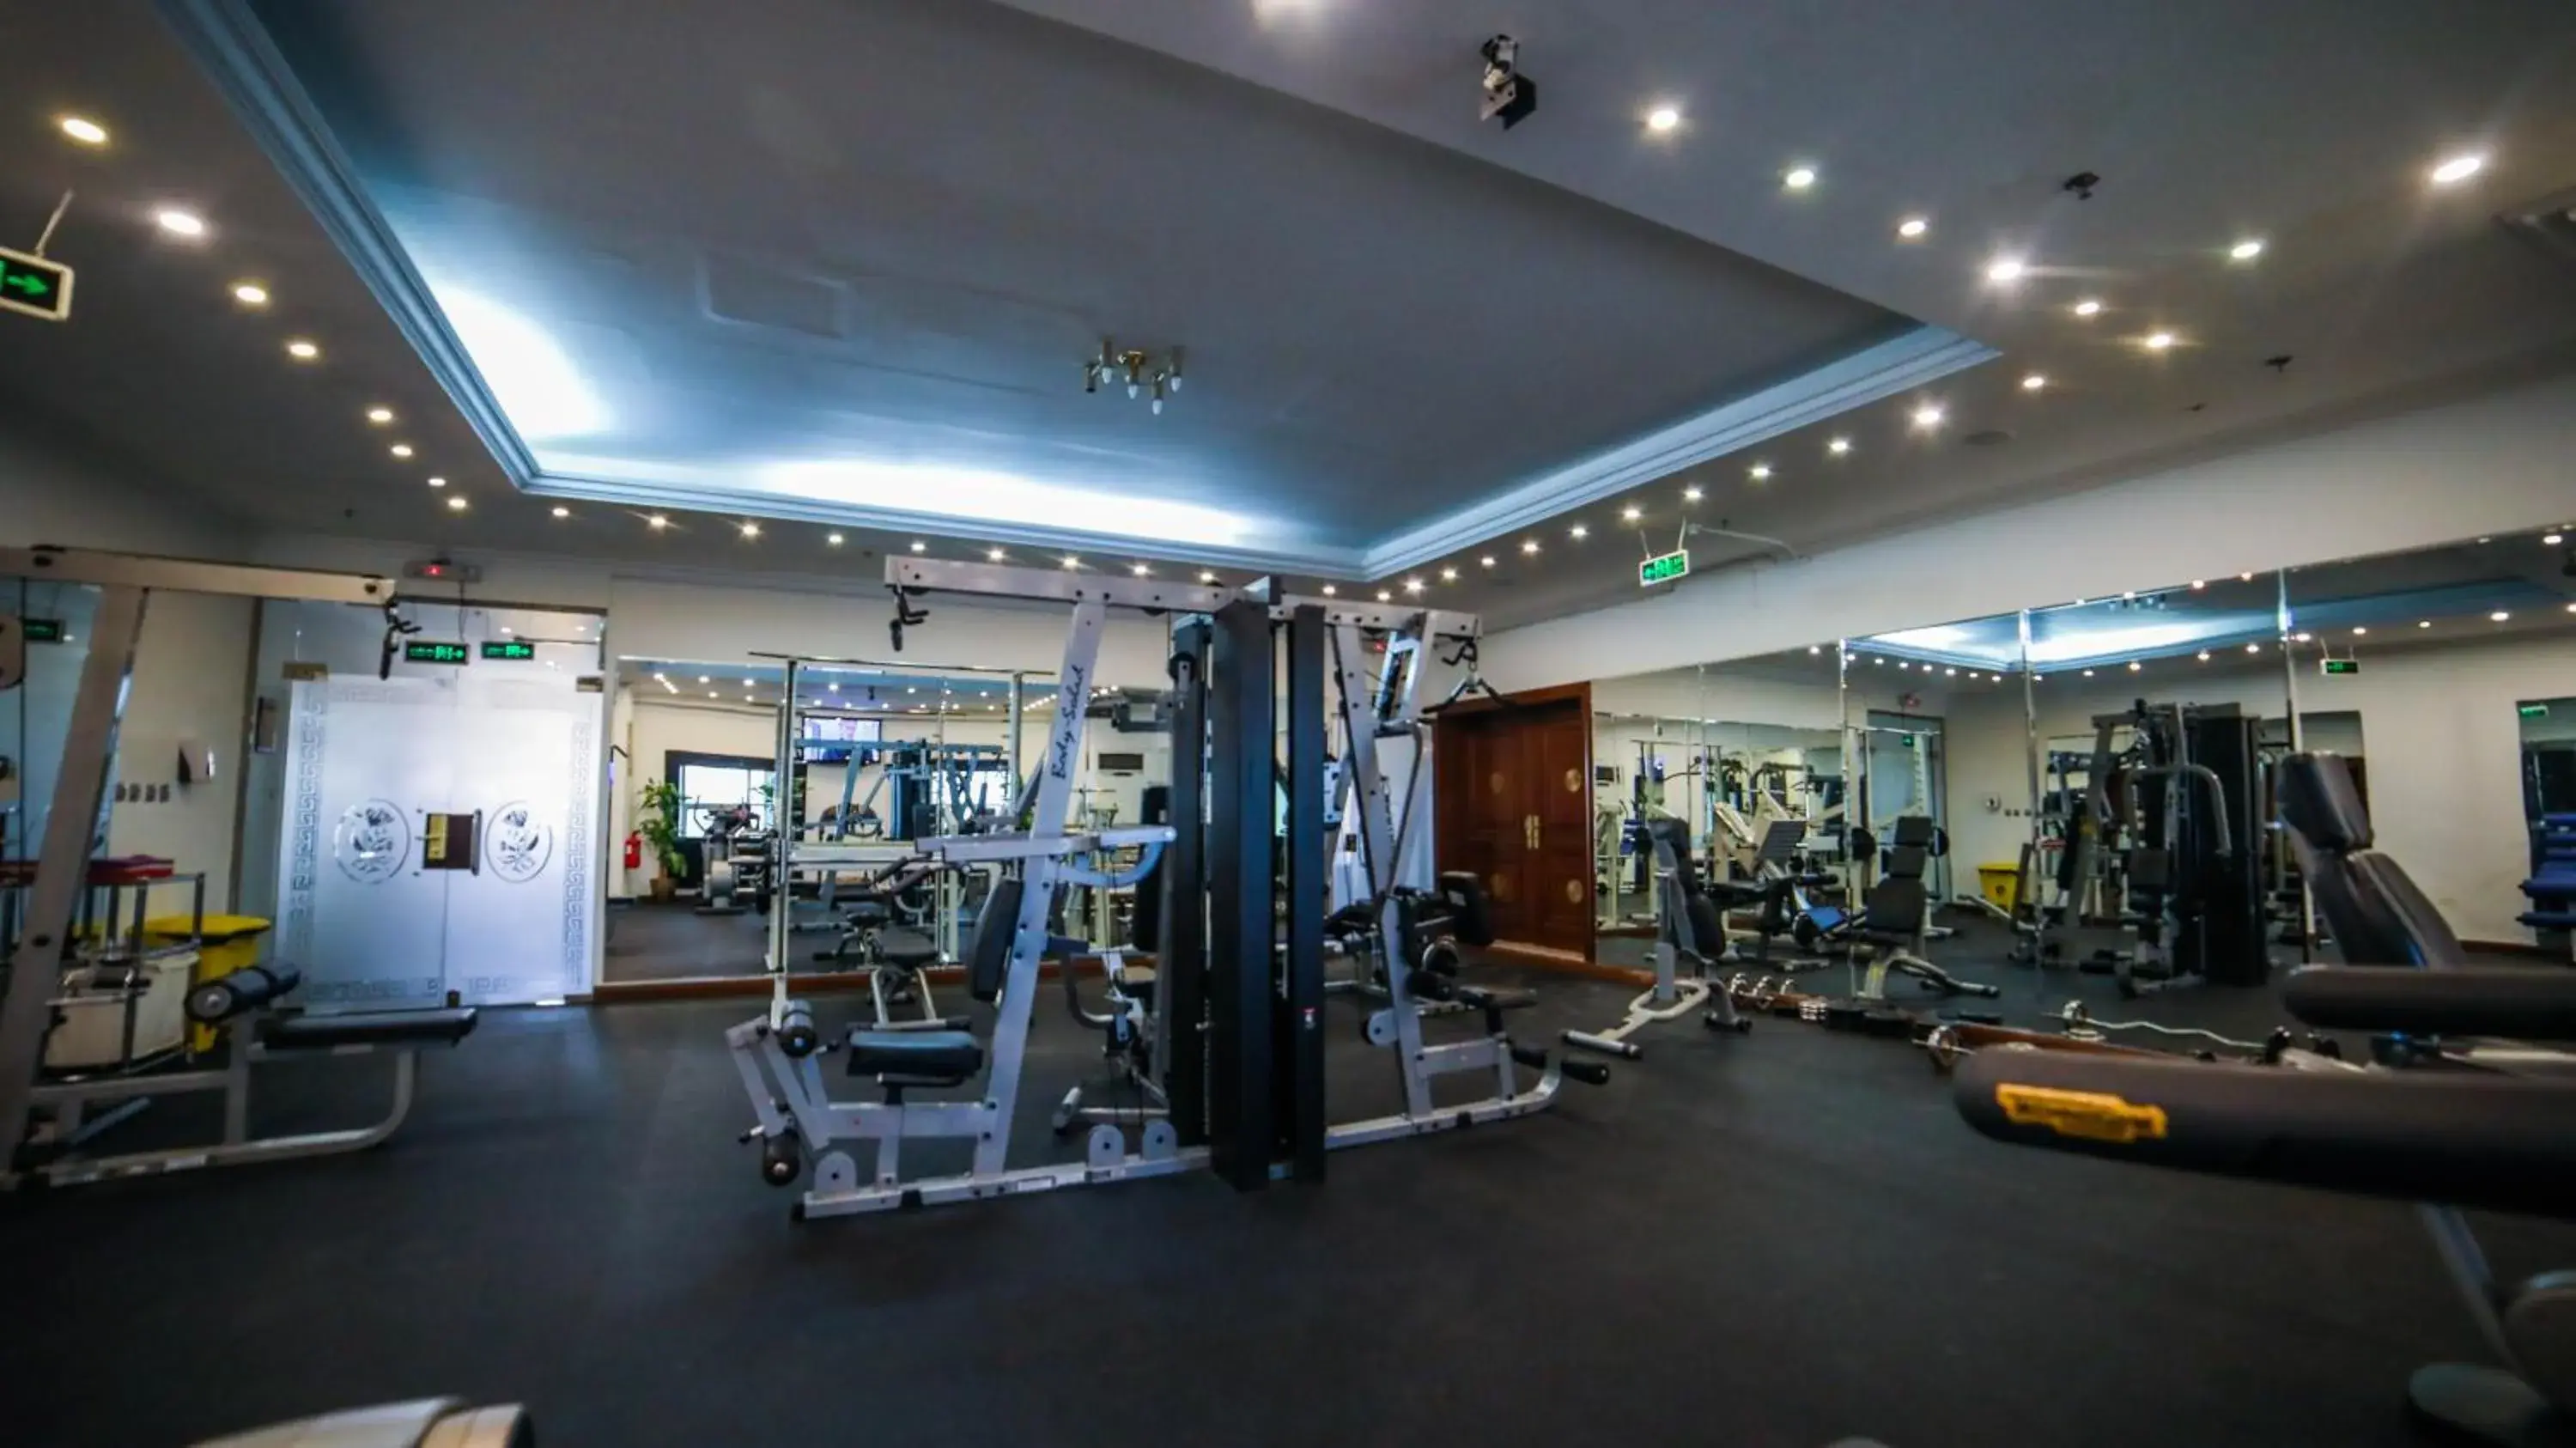 Fitness centre/facilities, Fitness Center/Facilities in Casablanca Hotel Jeddah